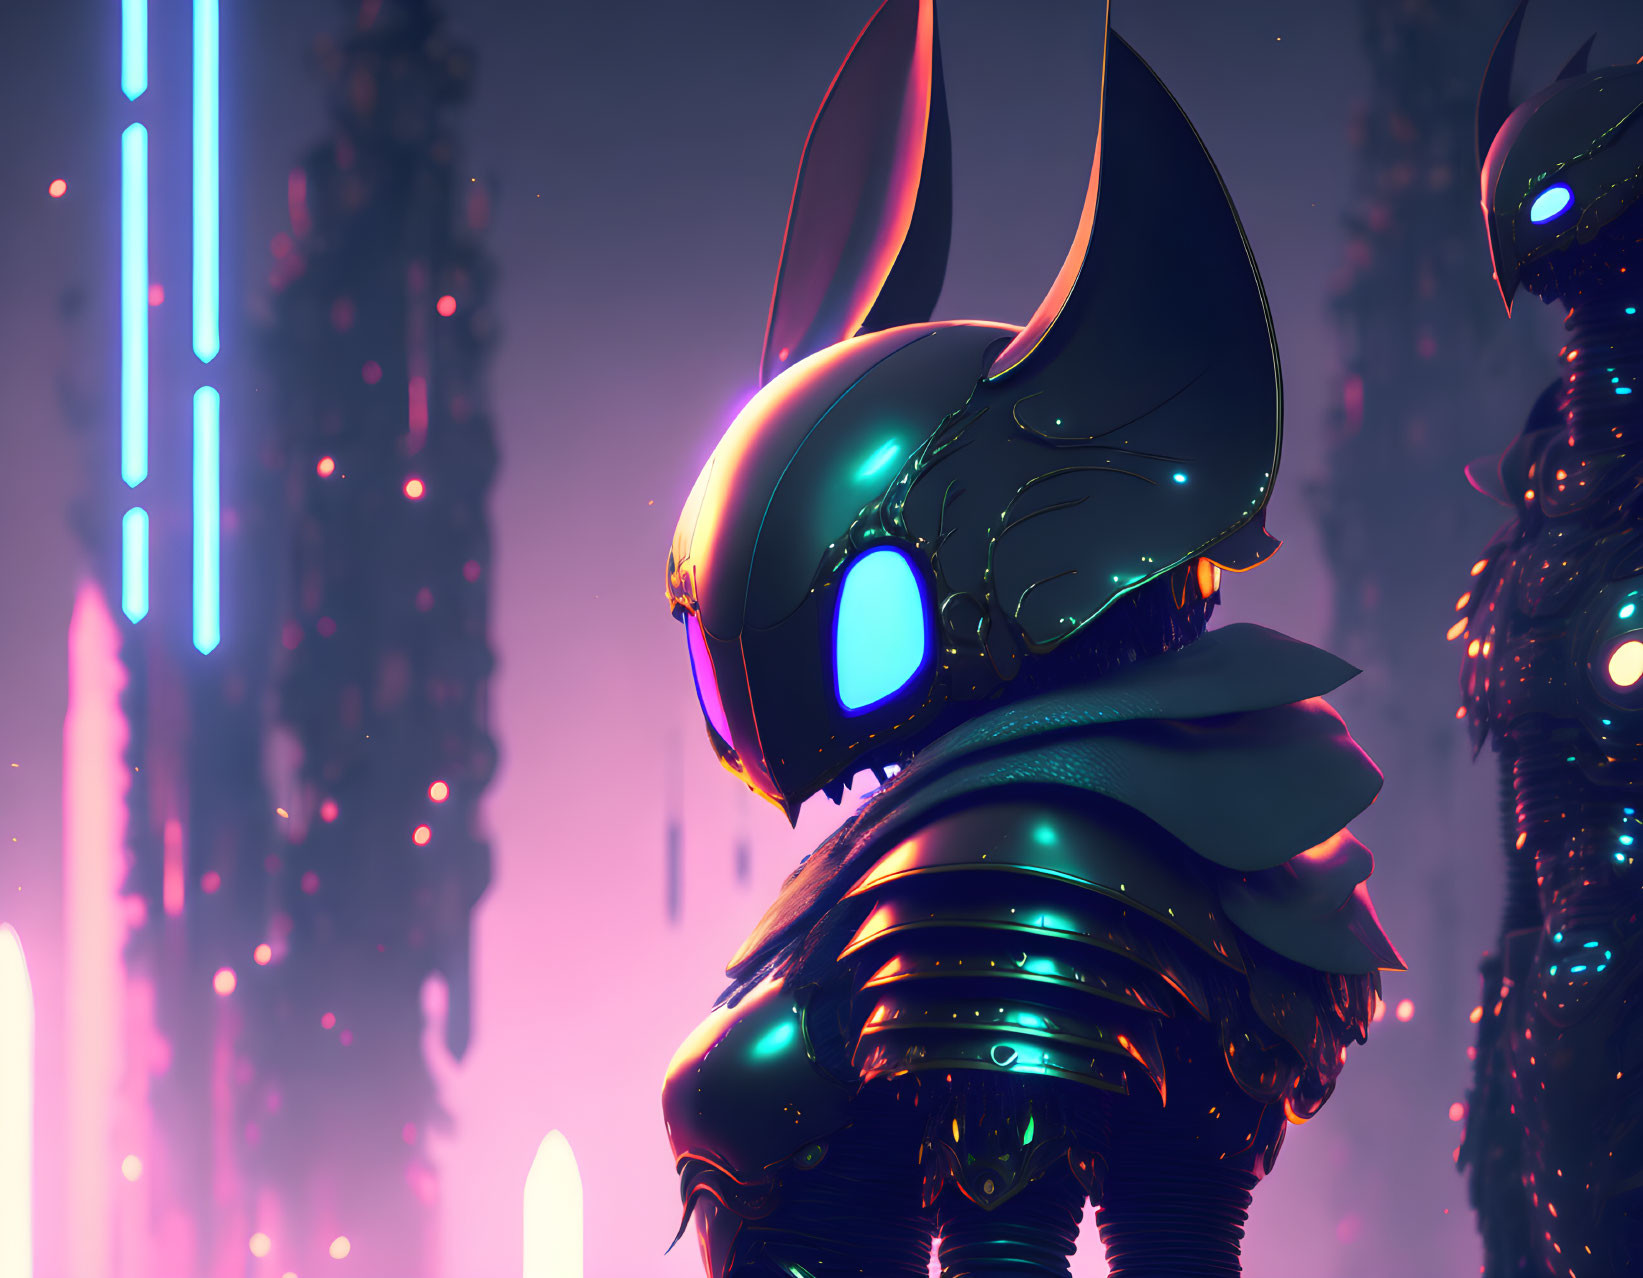 Hollow Knight in Cyberpunk style